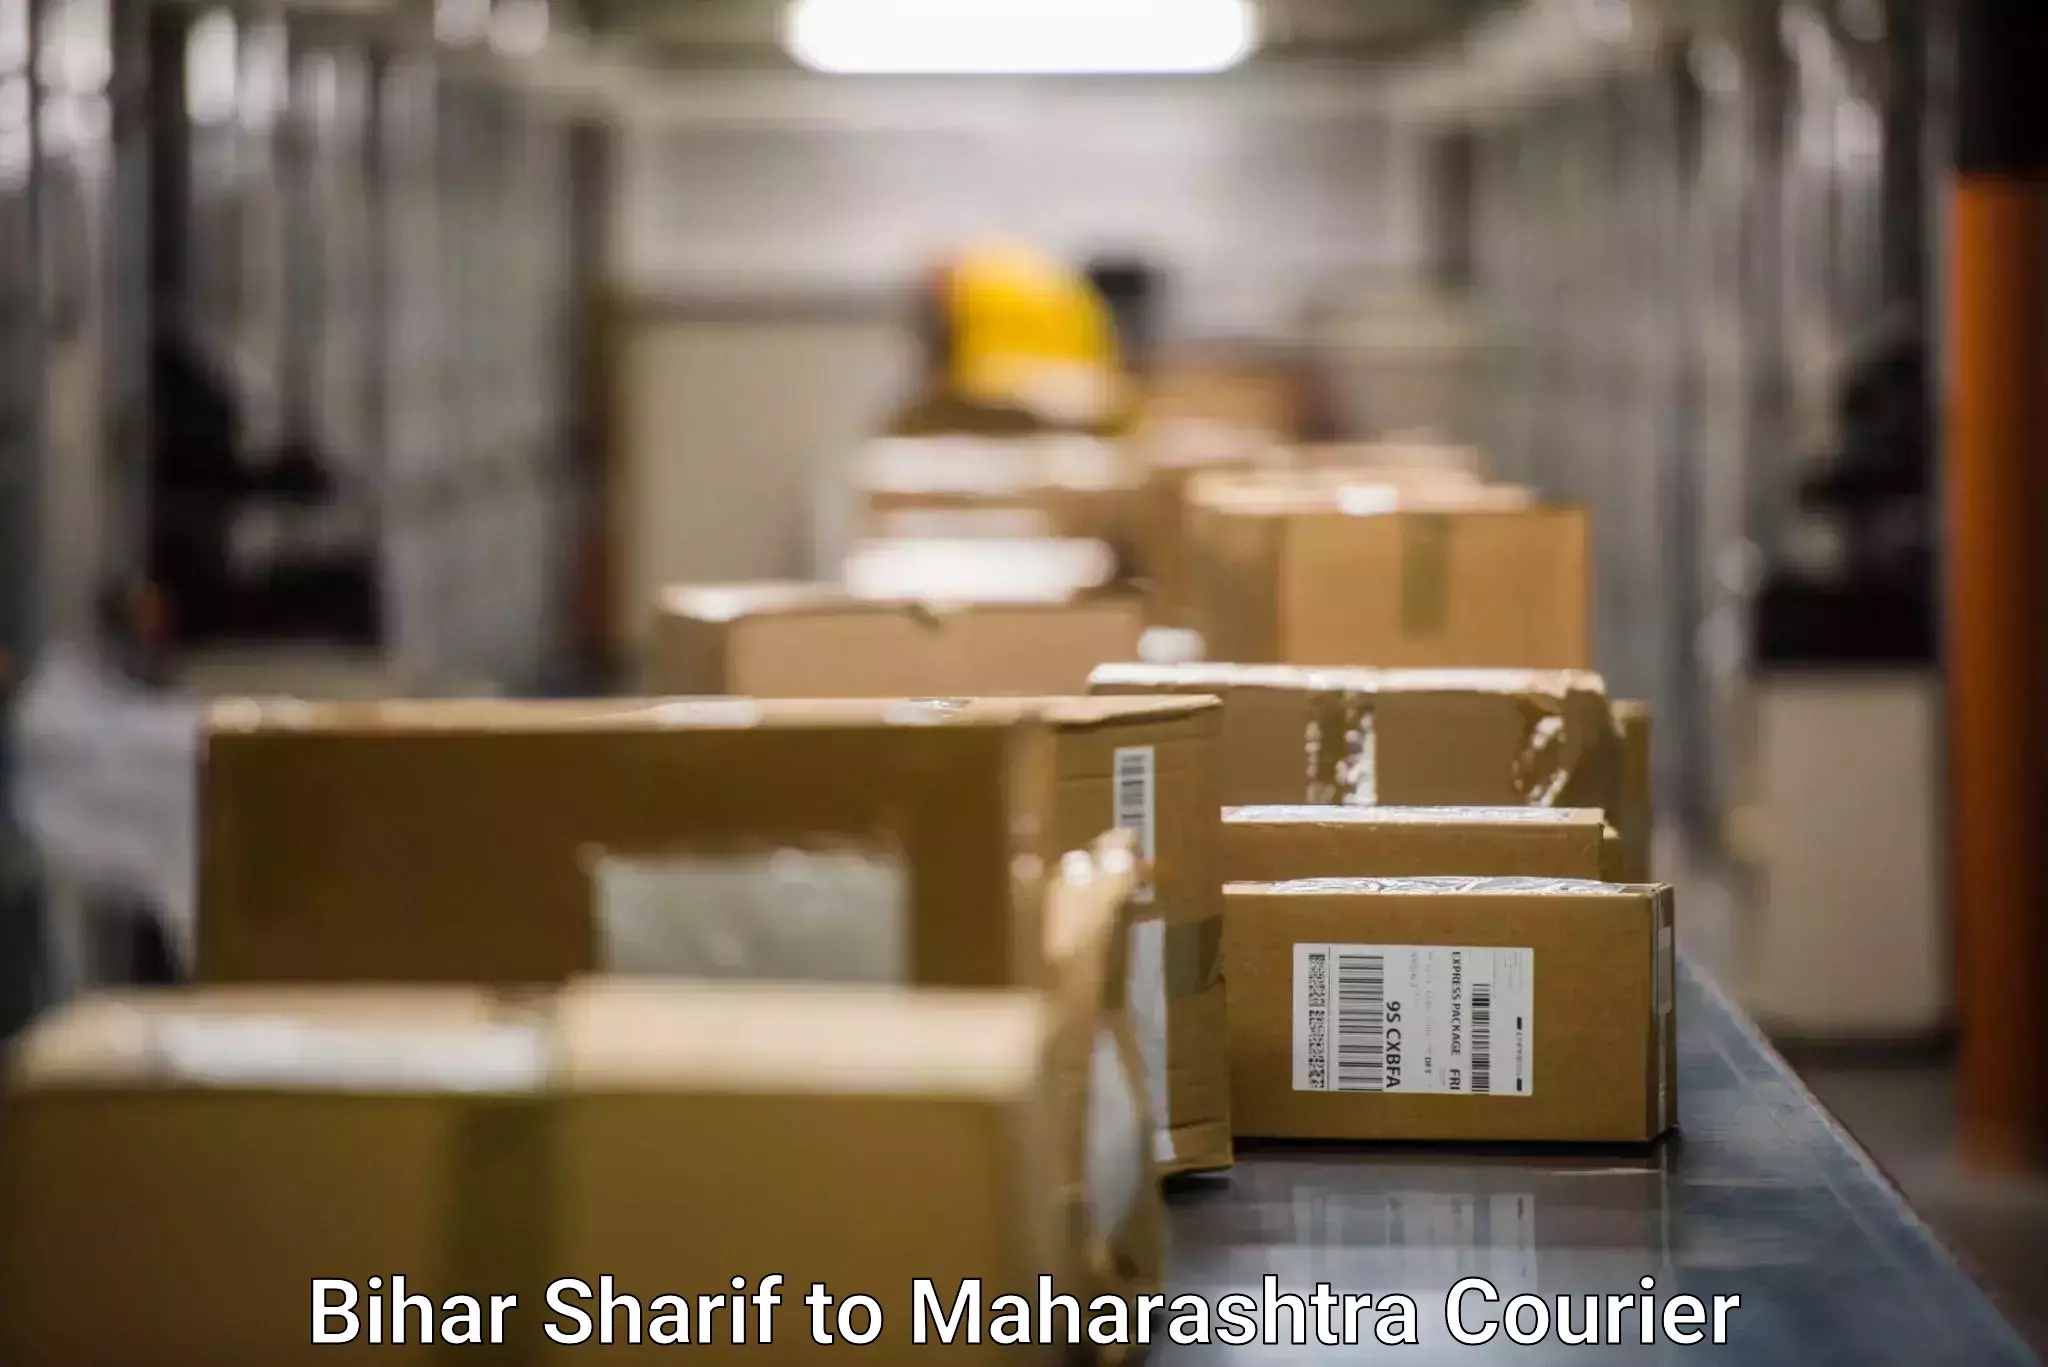 Seamless shipping service Bihar Sharif to Chiplun